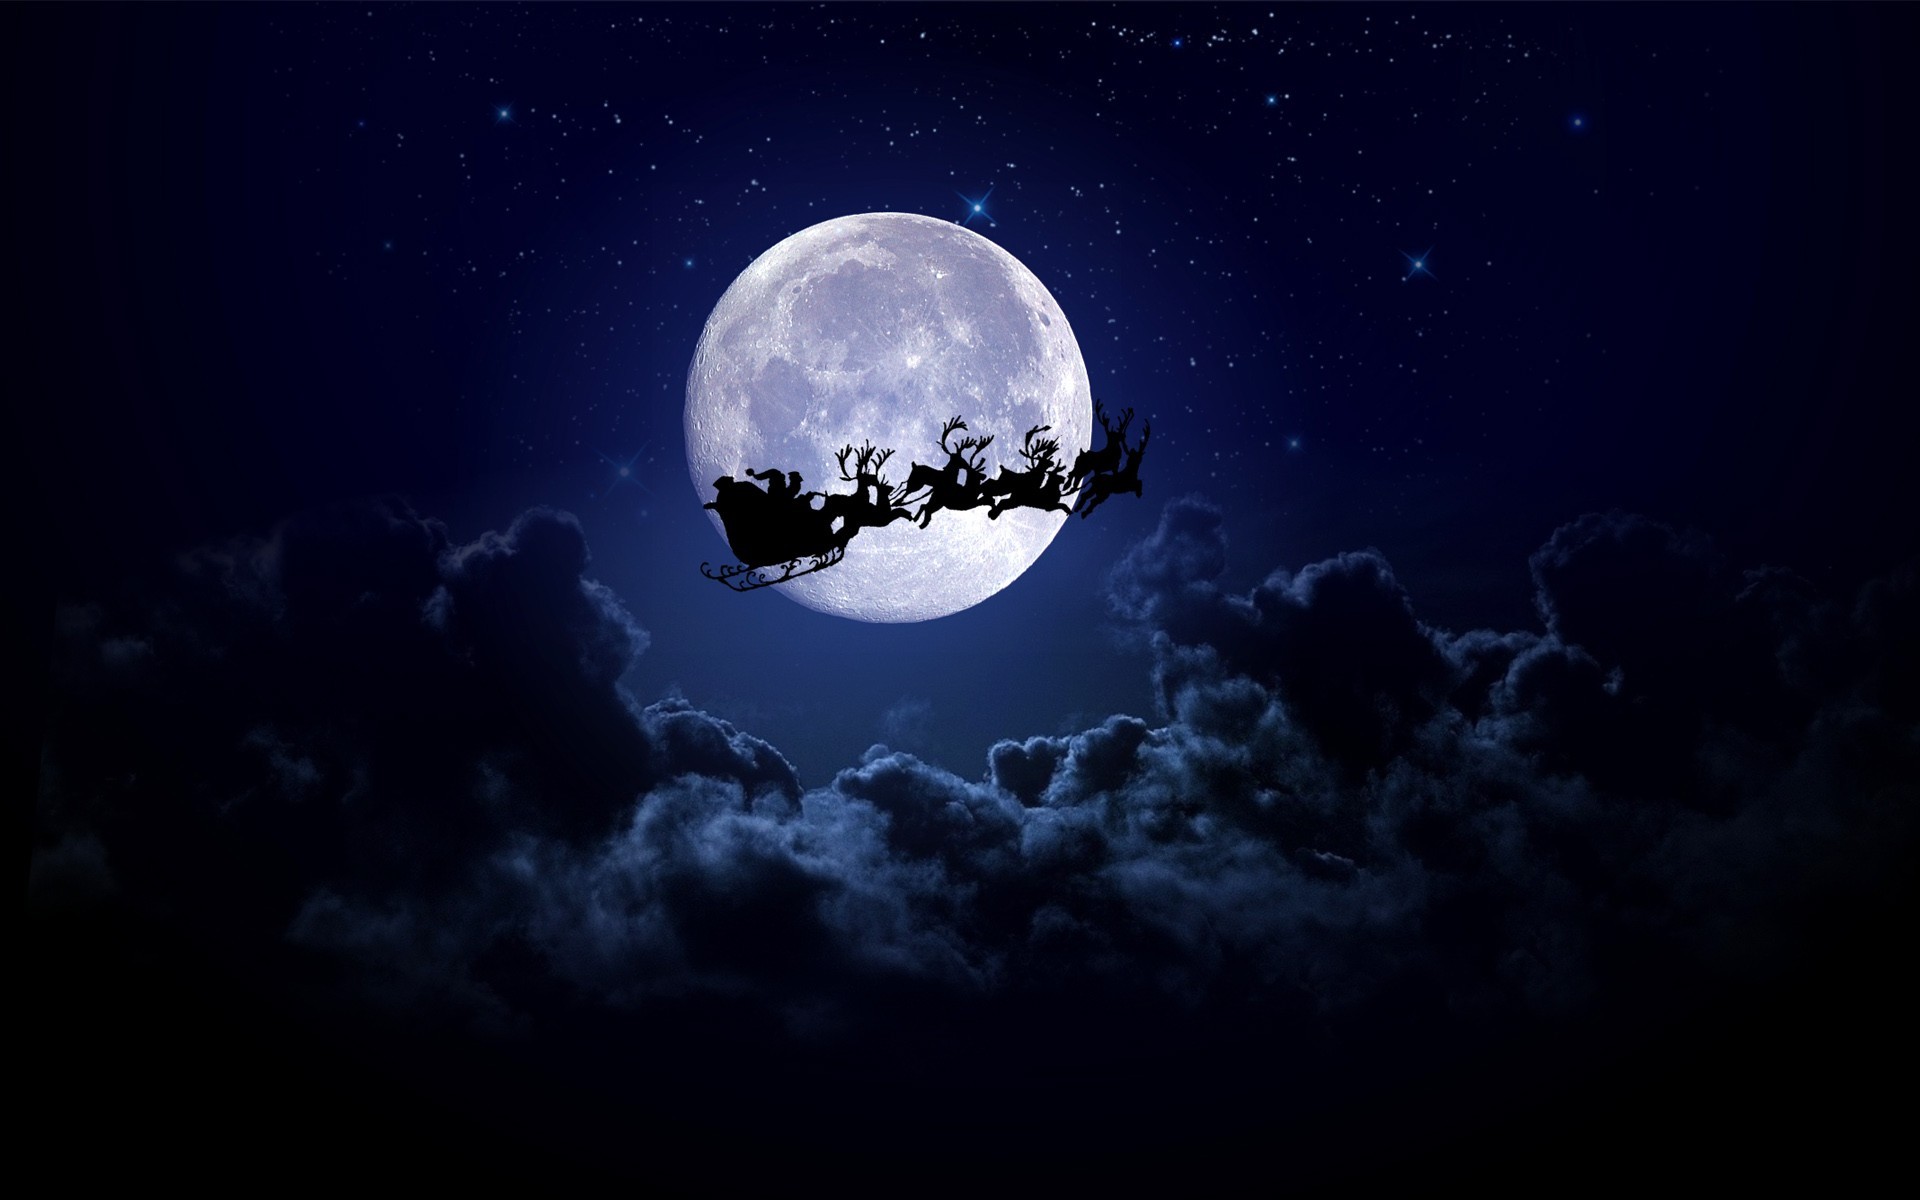 1920x1200 Christmas Santa Claus midnight sleigh ride full moon silhouette